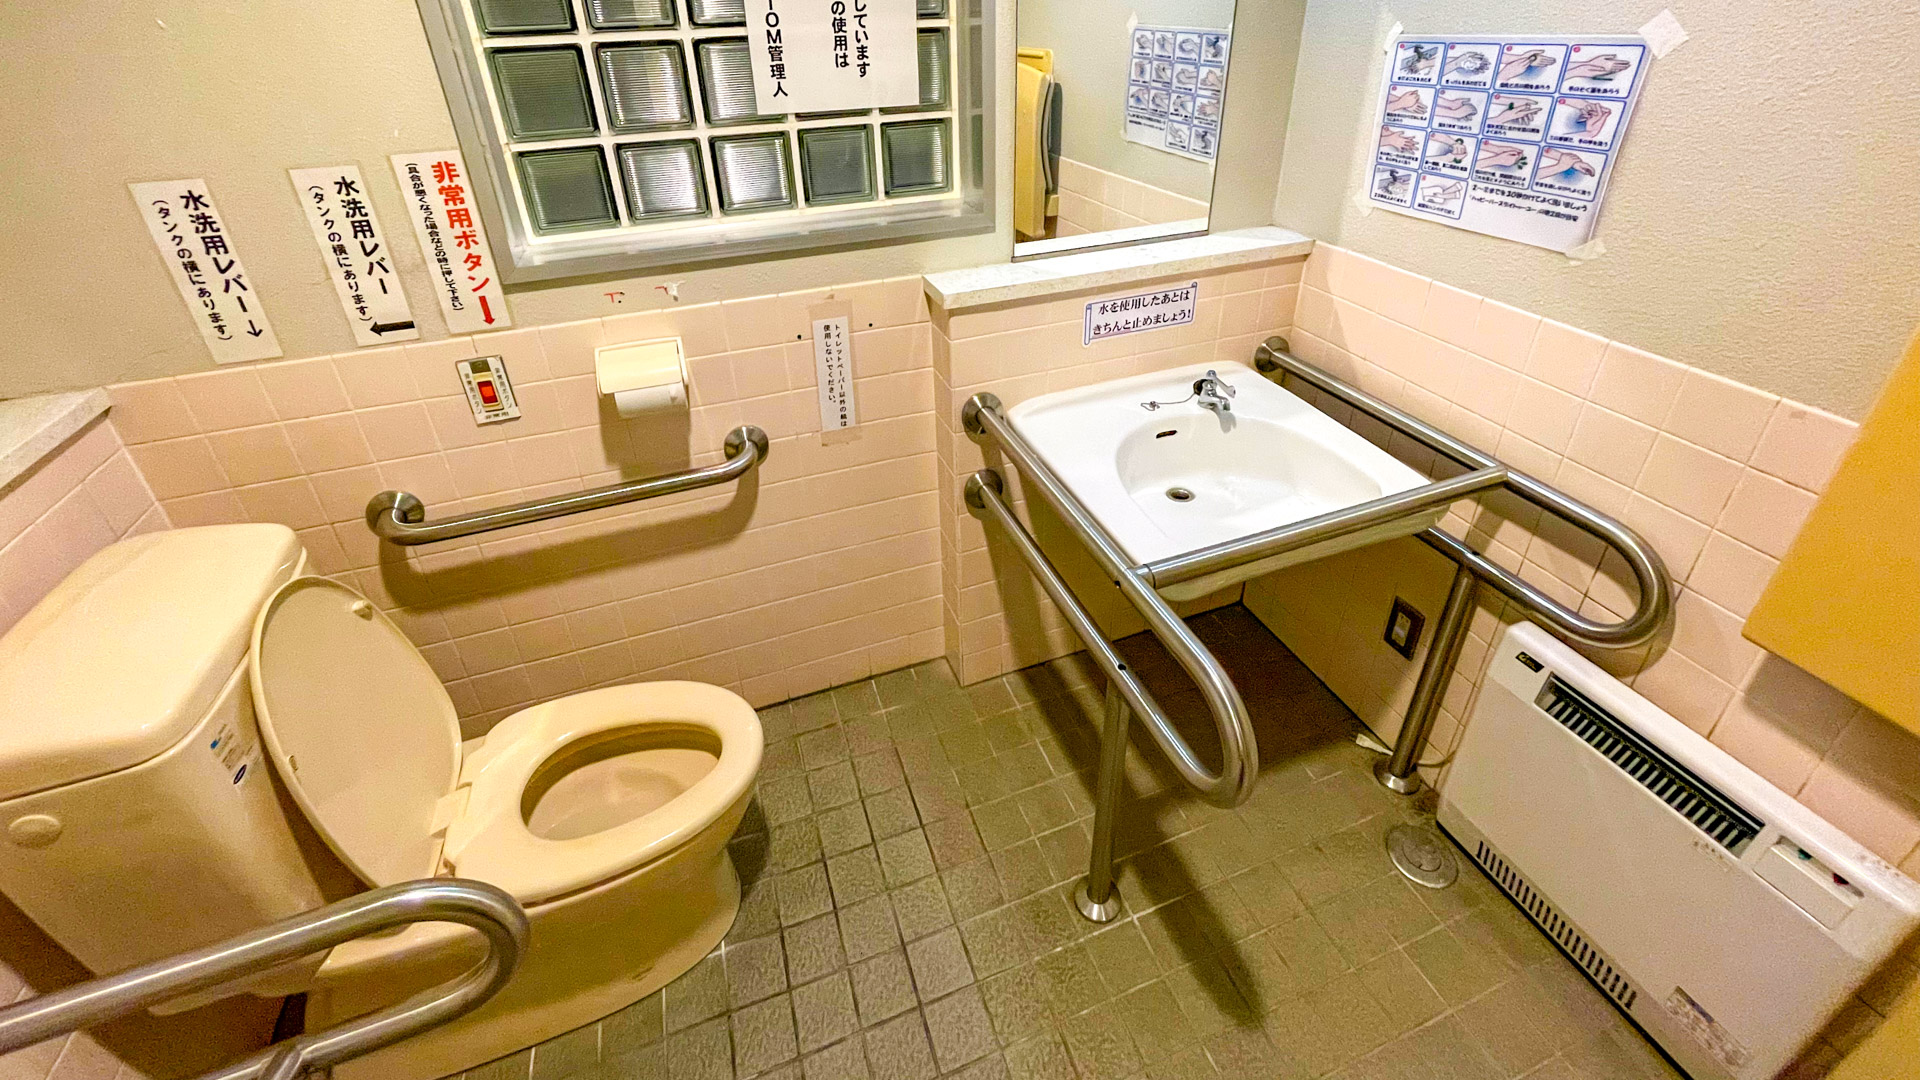 道の駅 かみゆうべつ温泉 チューリップの湯 車中泊 24時間トイレ